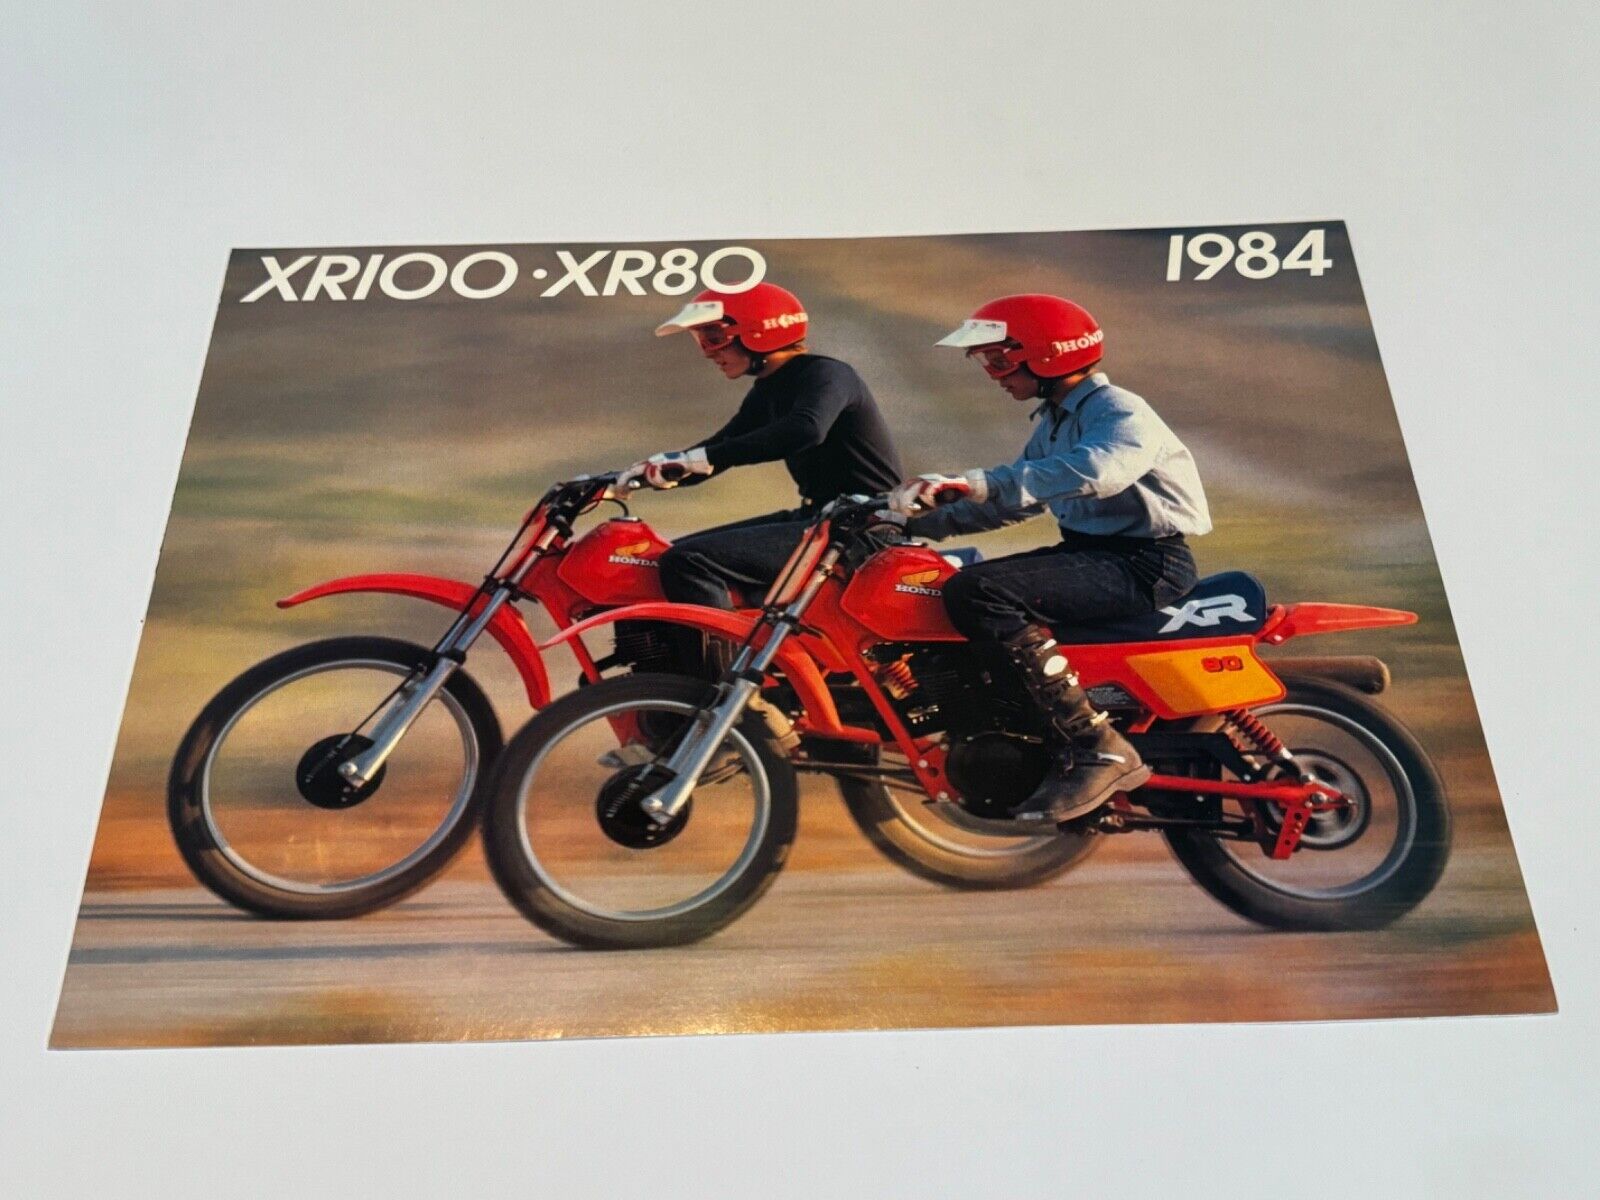 Original 1984 Honda XR100-XR80 Motorcycle Dealer Sales Brochure